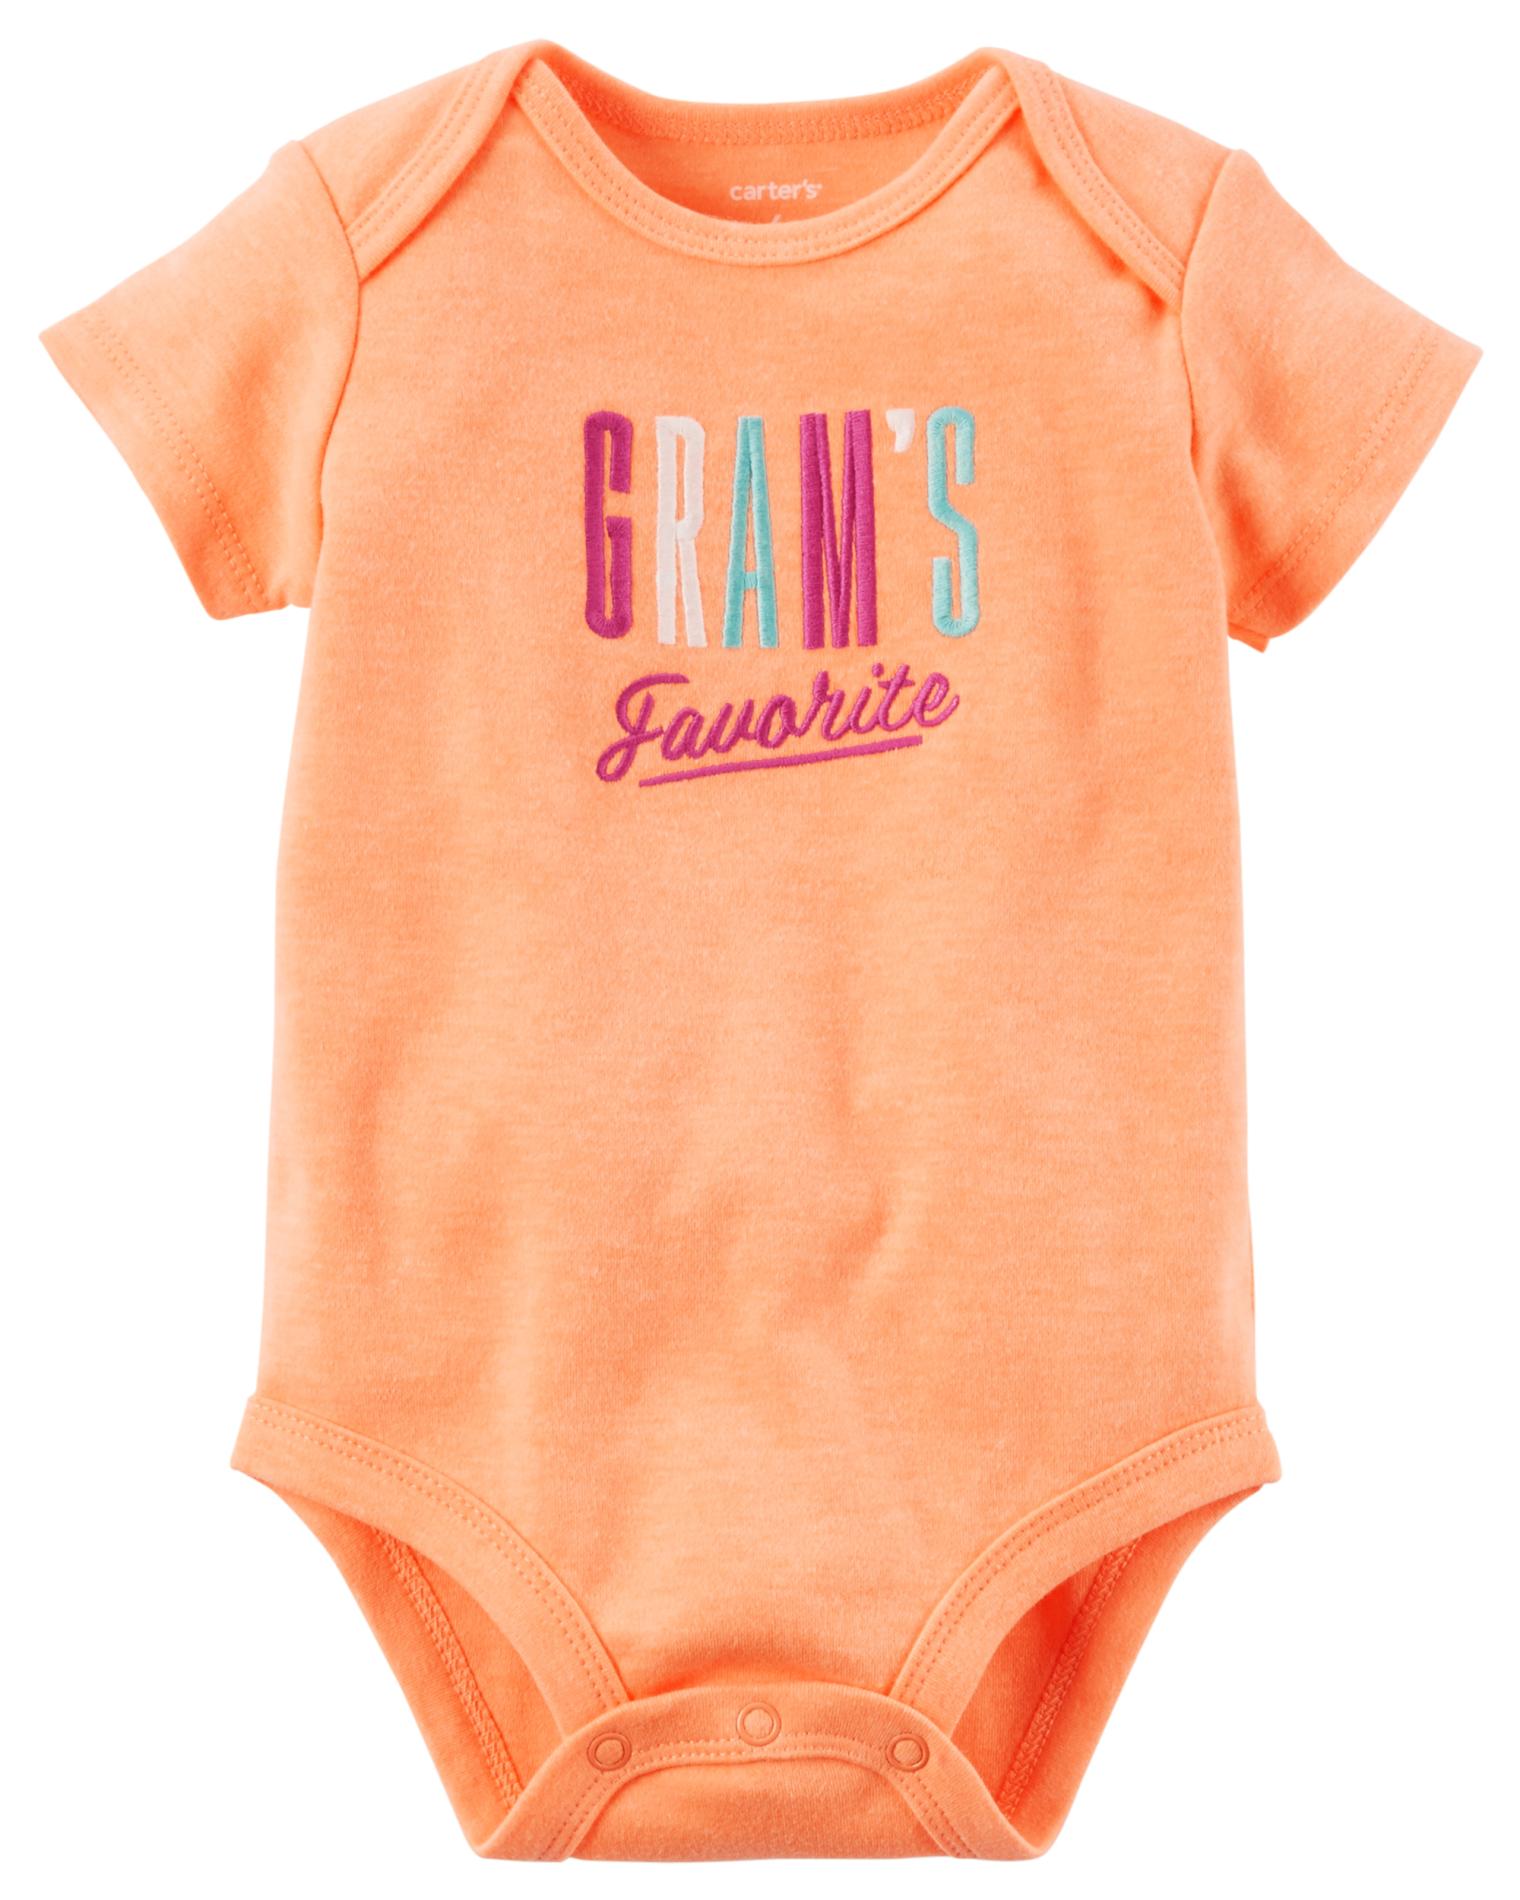 Carter's Newborn & Infant Girls' Bodysuit - Gram's Favorite